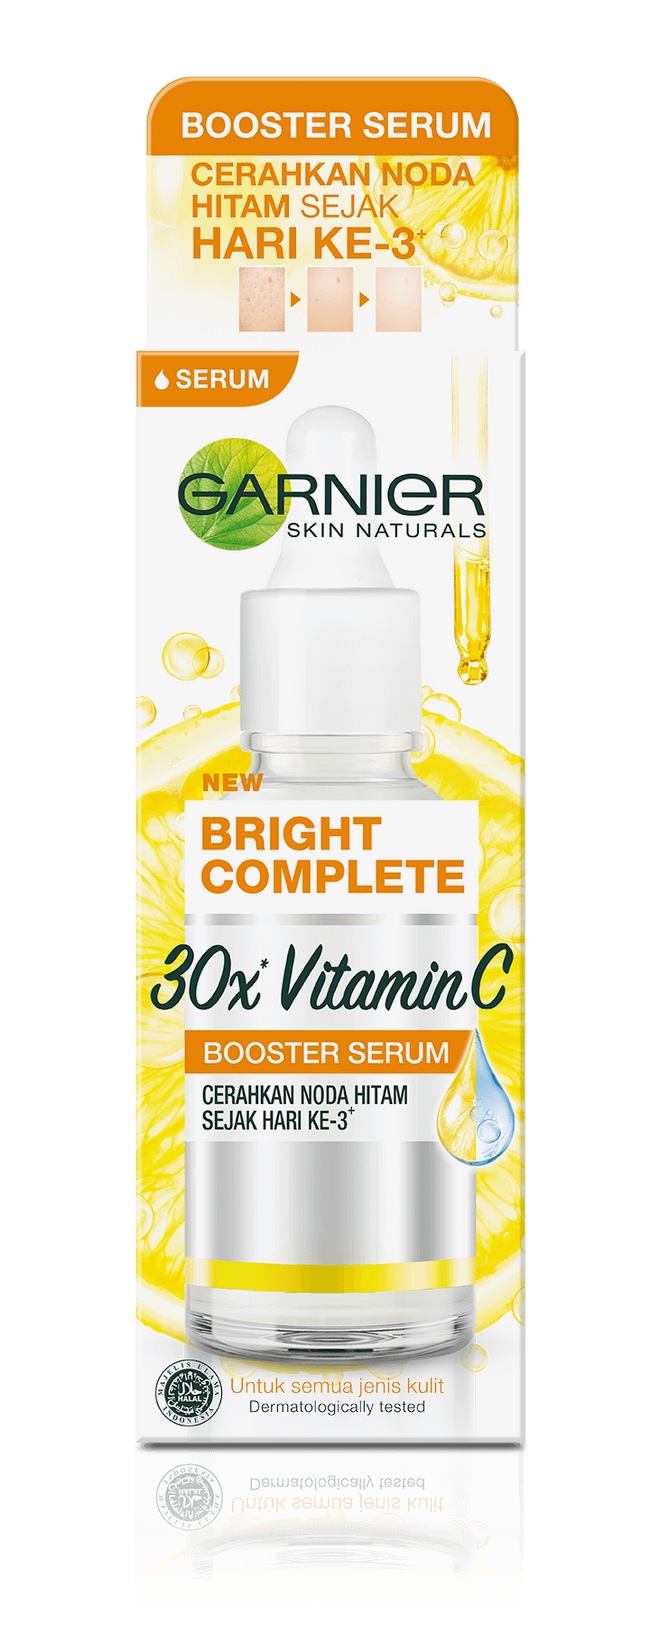 Garnier Bright Complete Garnier Bright Complete 30x Vitamin C Booster Serum